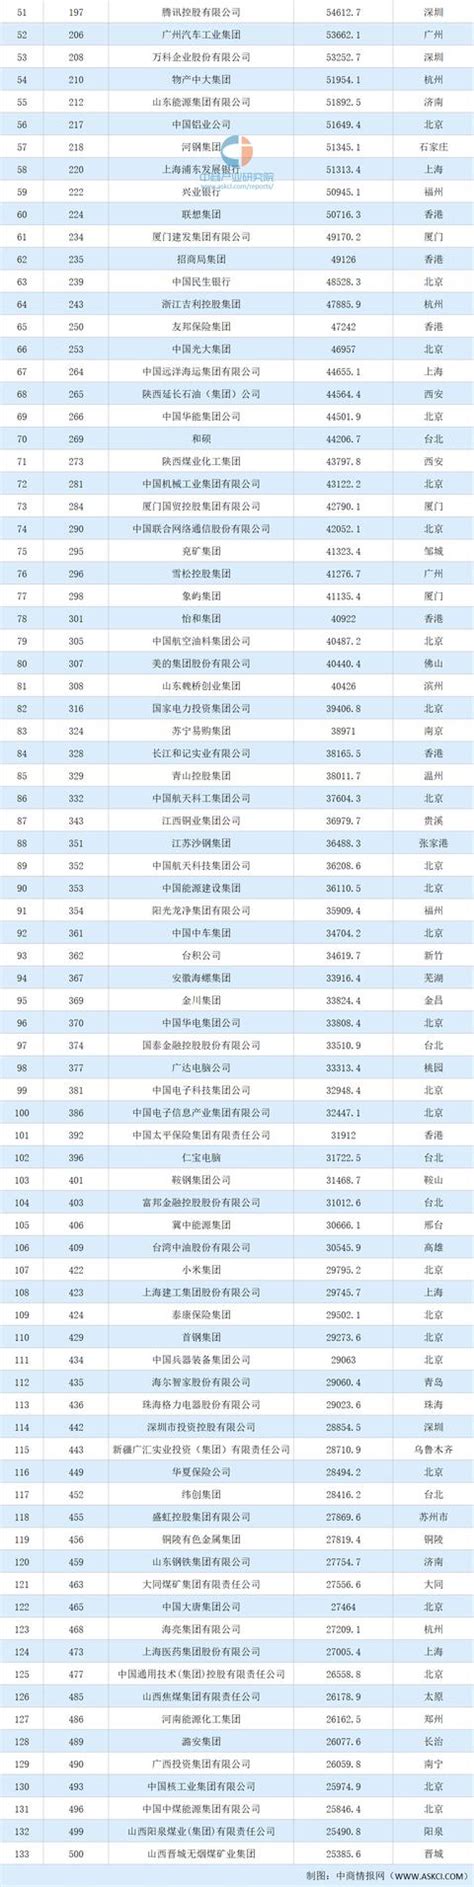 2020年财富世界500强中国企业名单 133家中企最新排名排行榜-闽南网